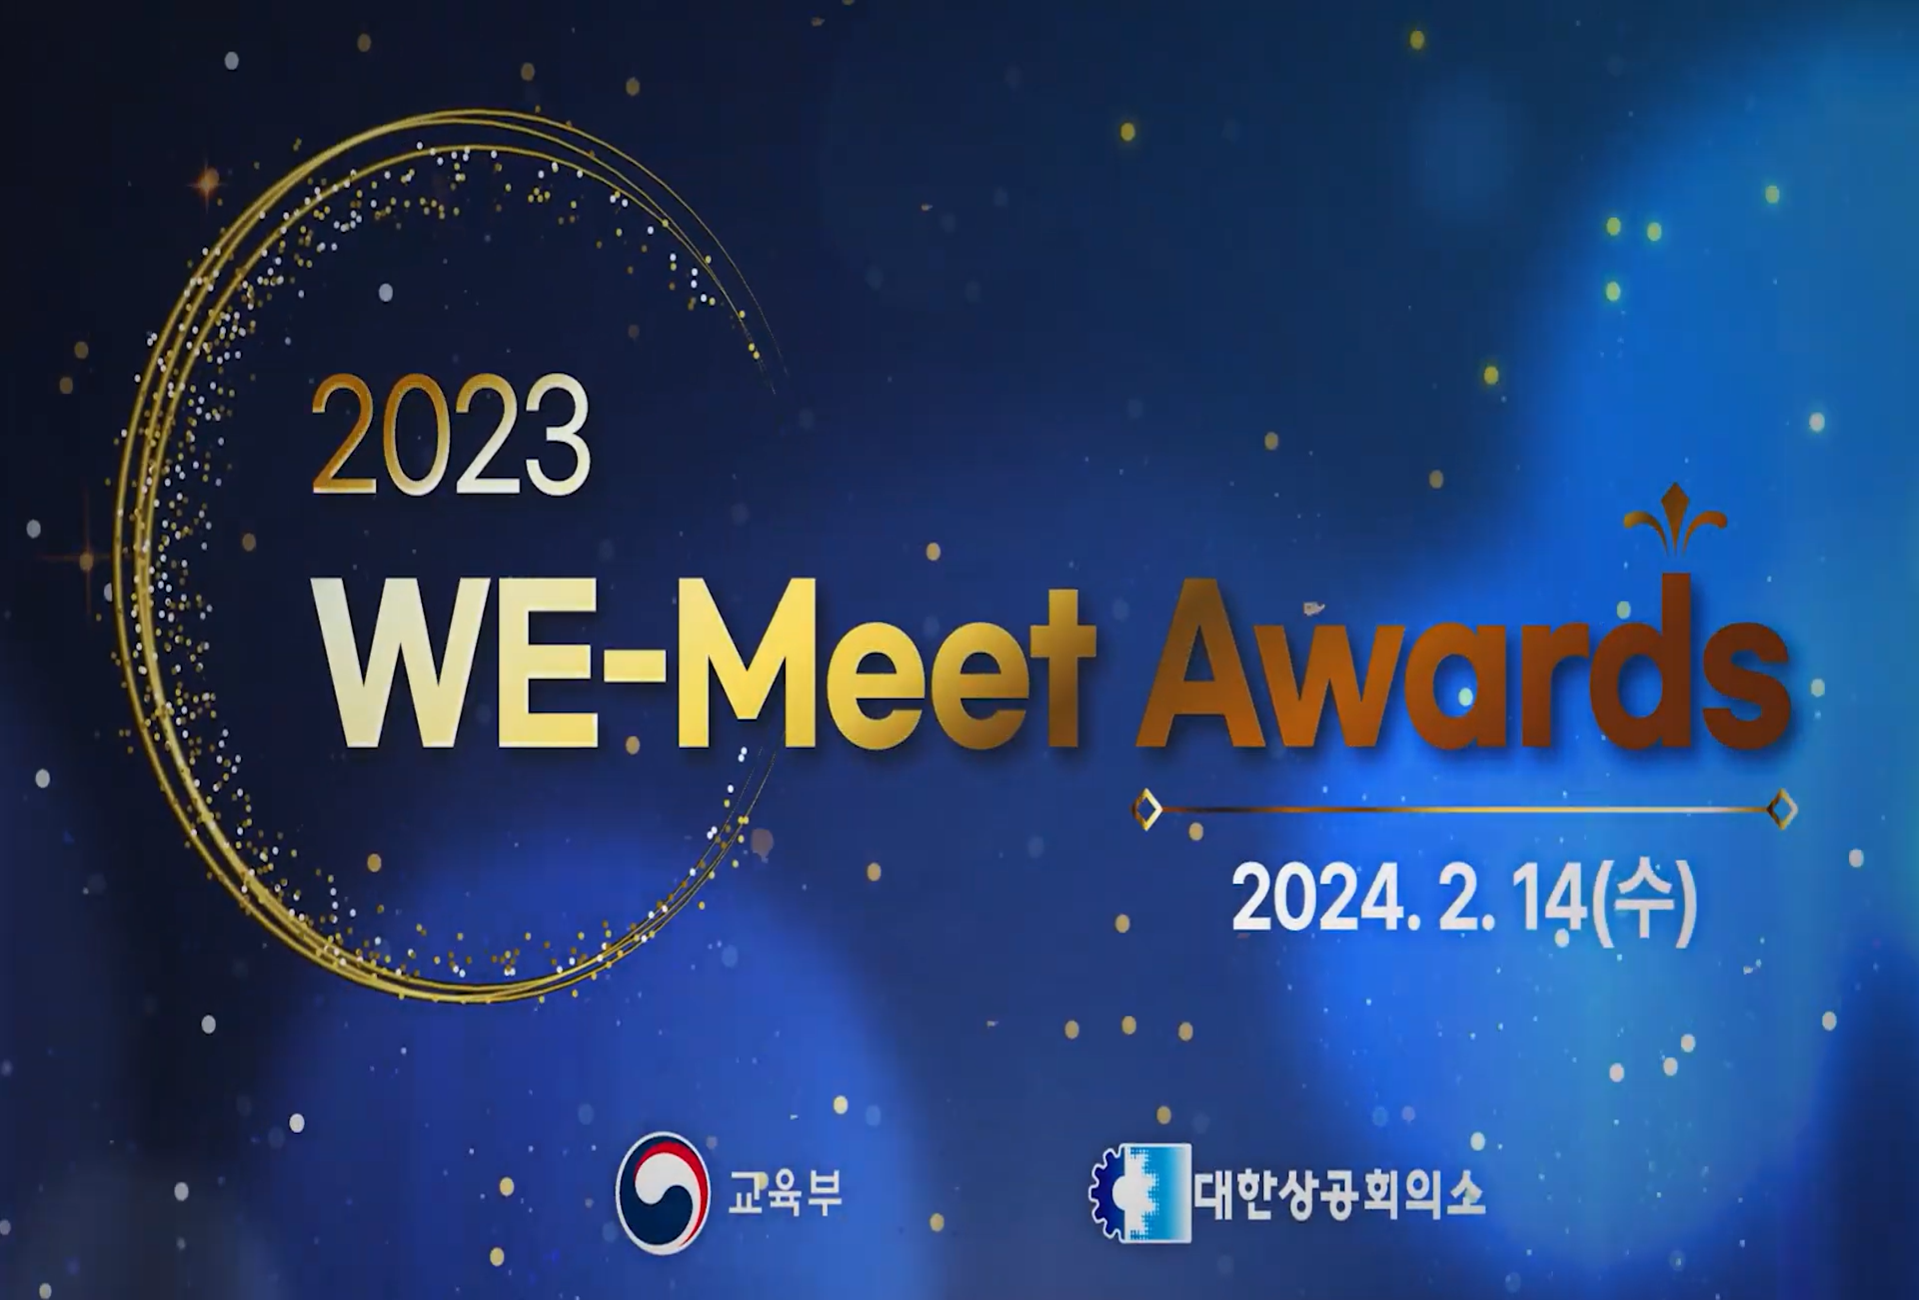 [위밋] 2023 WE-Meet Awards 스케치 영상